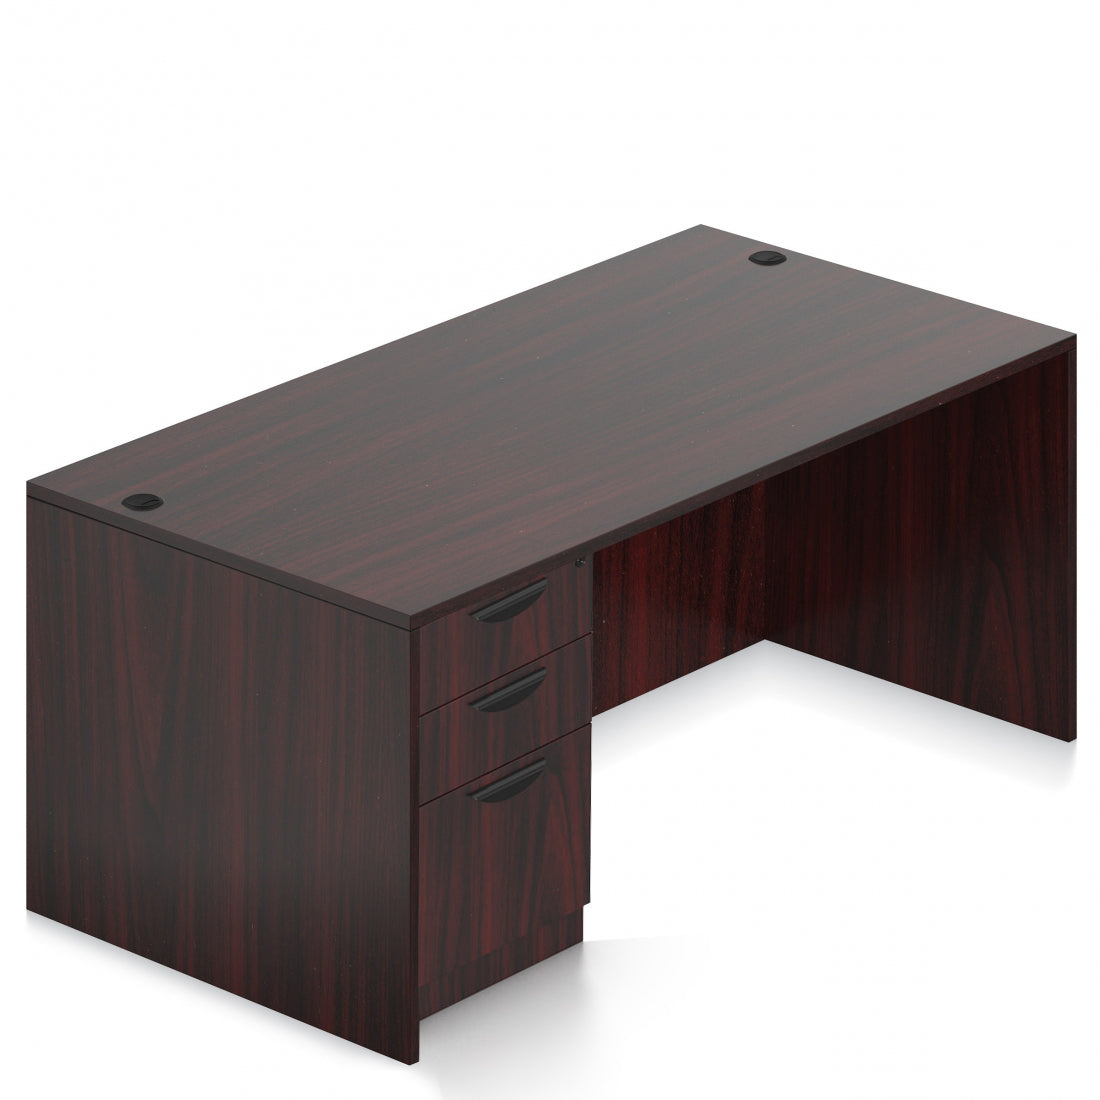 OTG 71"W x 30"D Rectangular Desk - Single Full Pedestal